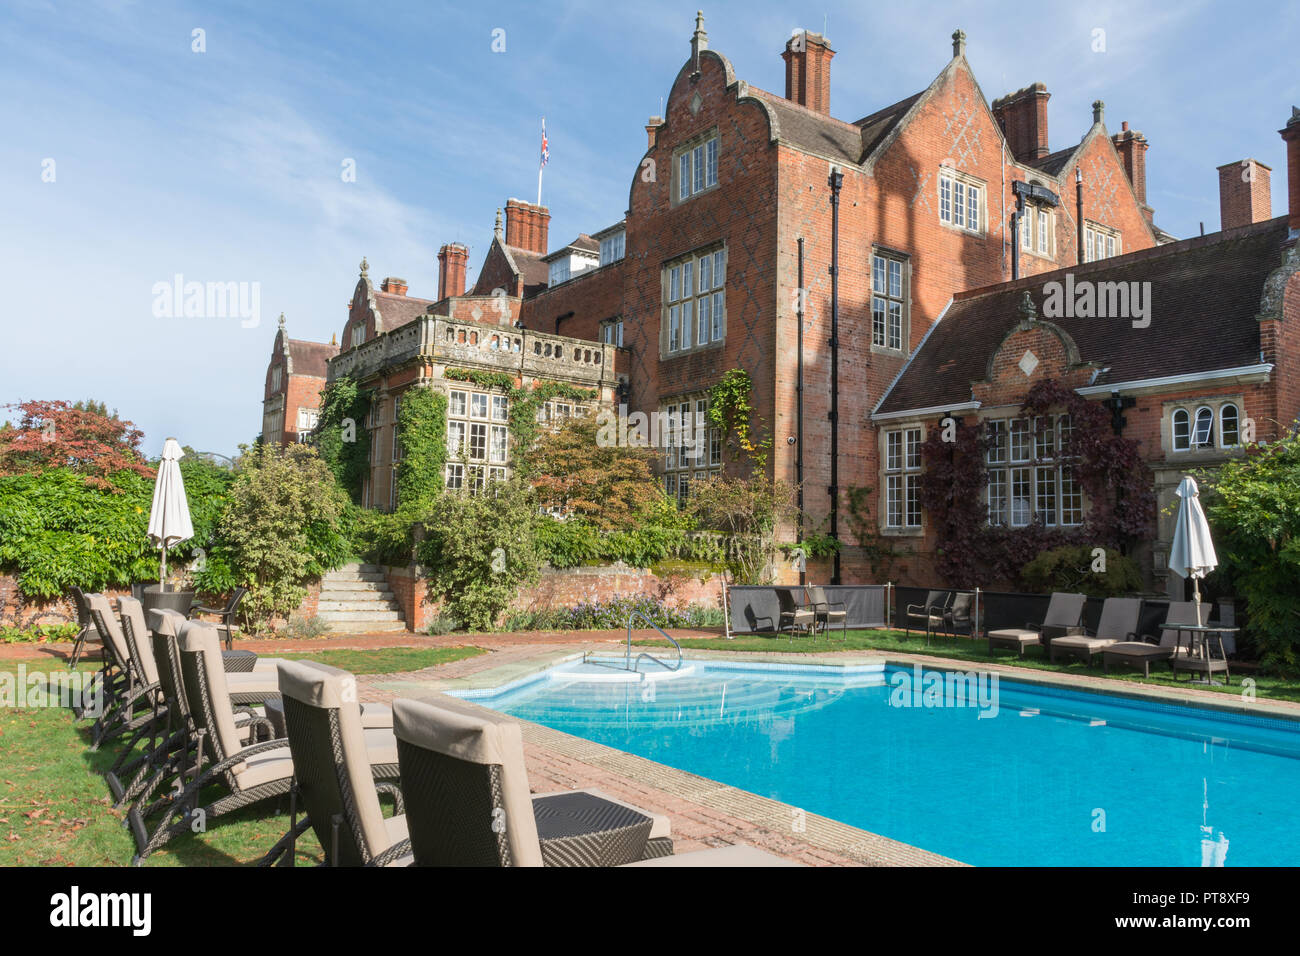 Tylney Hall, piscine et jardins, un grand manoir victorien et maintenant un hôtel de luxe hôtel de campagne, près de Rotherwick dans le Hampshire, au Royaume-Uni Banque D'Images